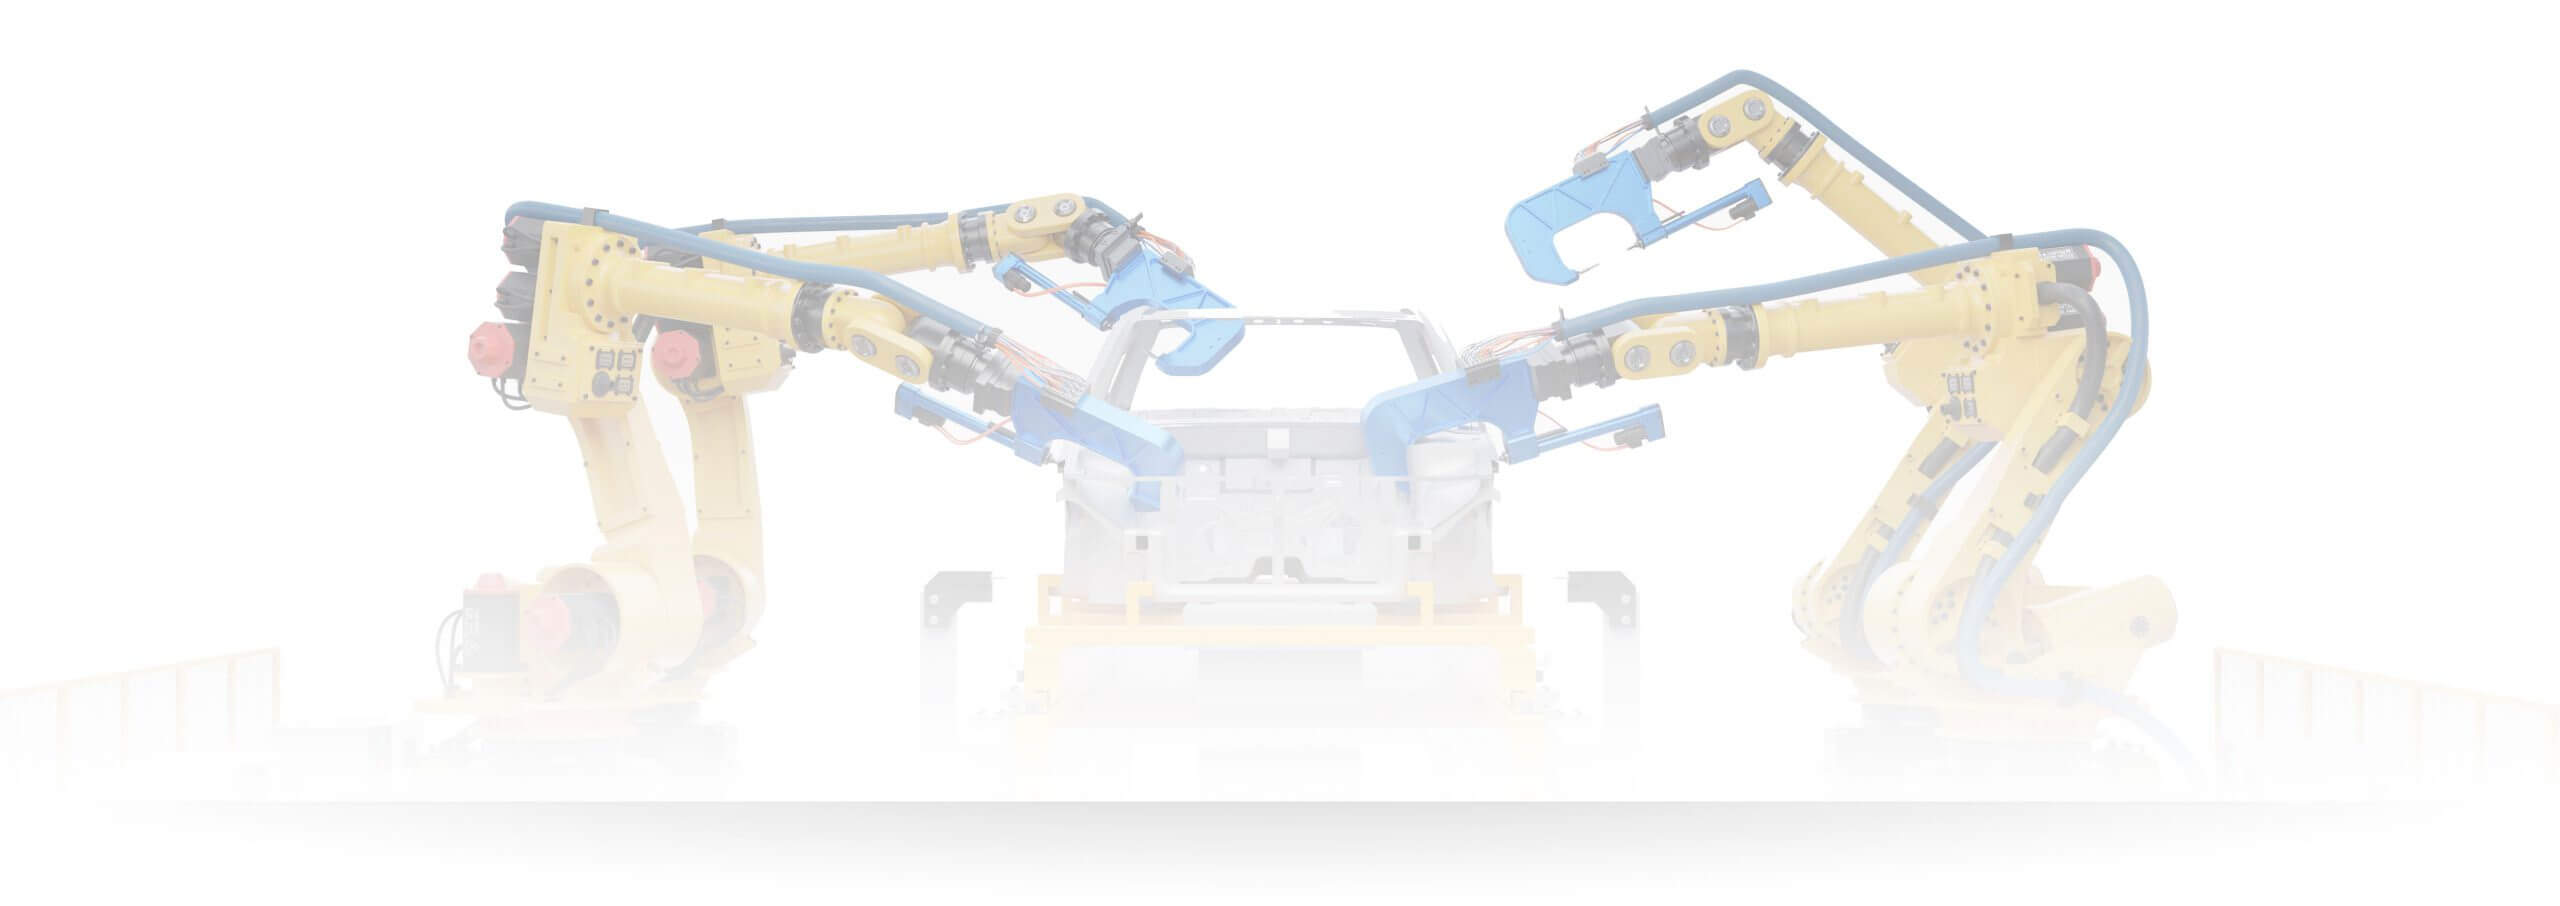 Werksroboter arbeitend an Auto auf Fließband durchsichtig fast verblasst